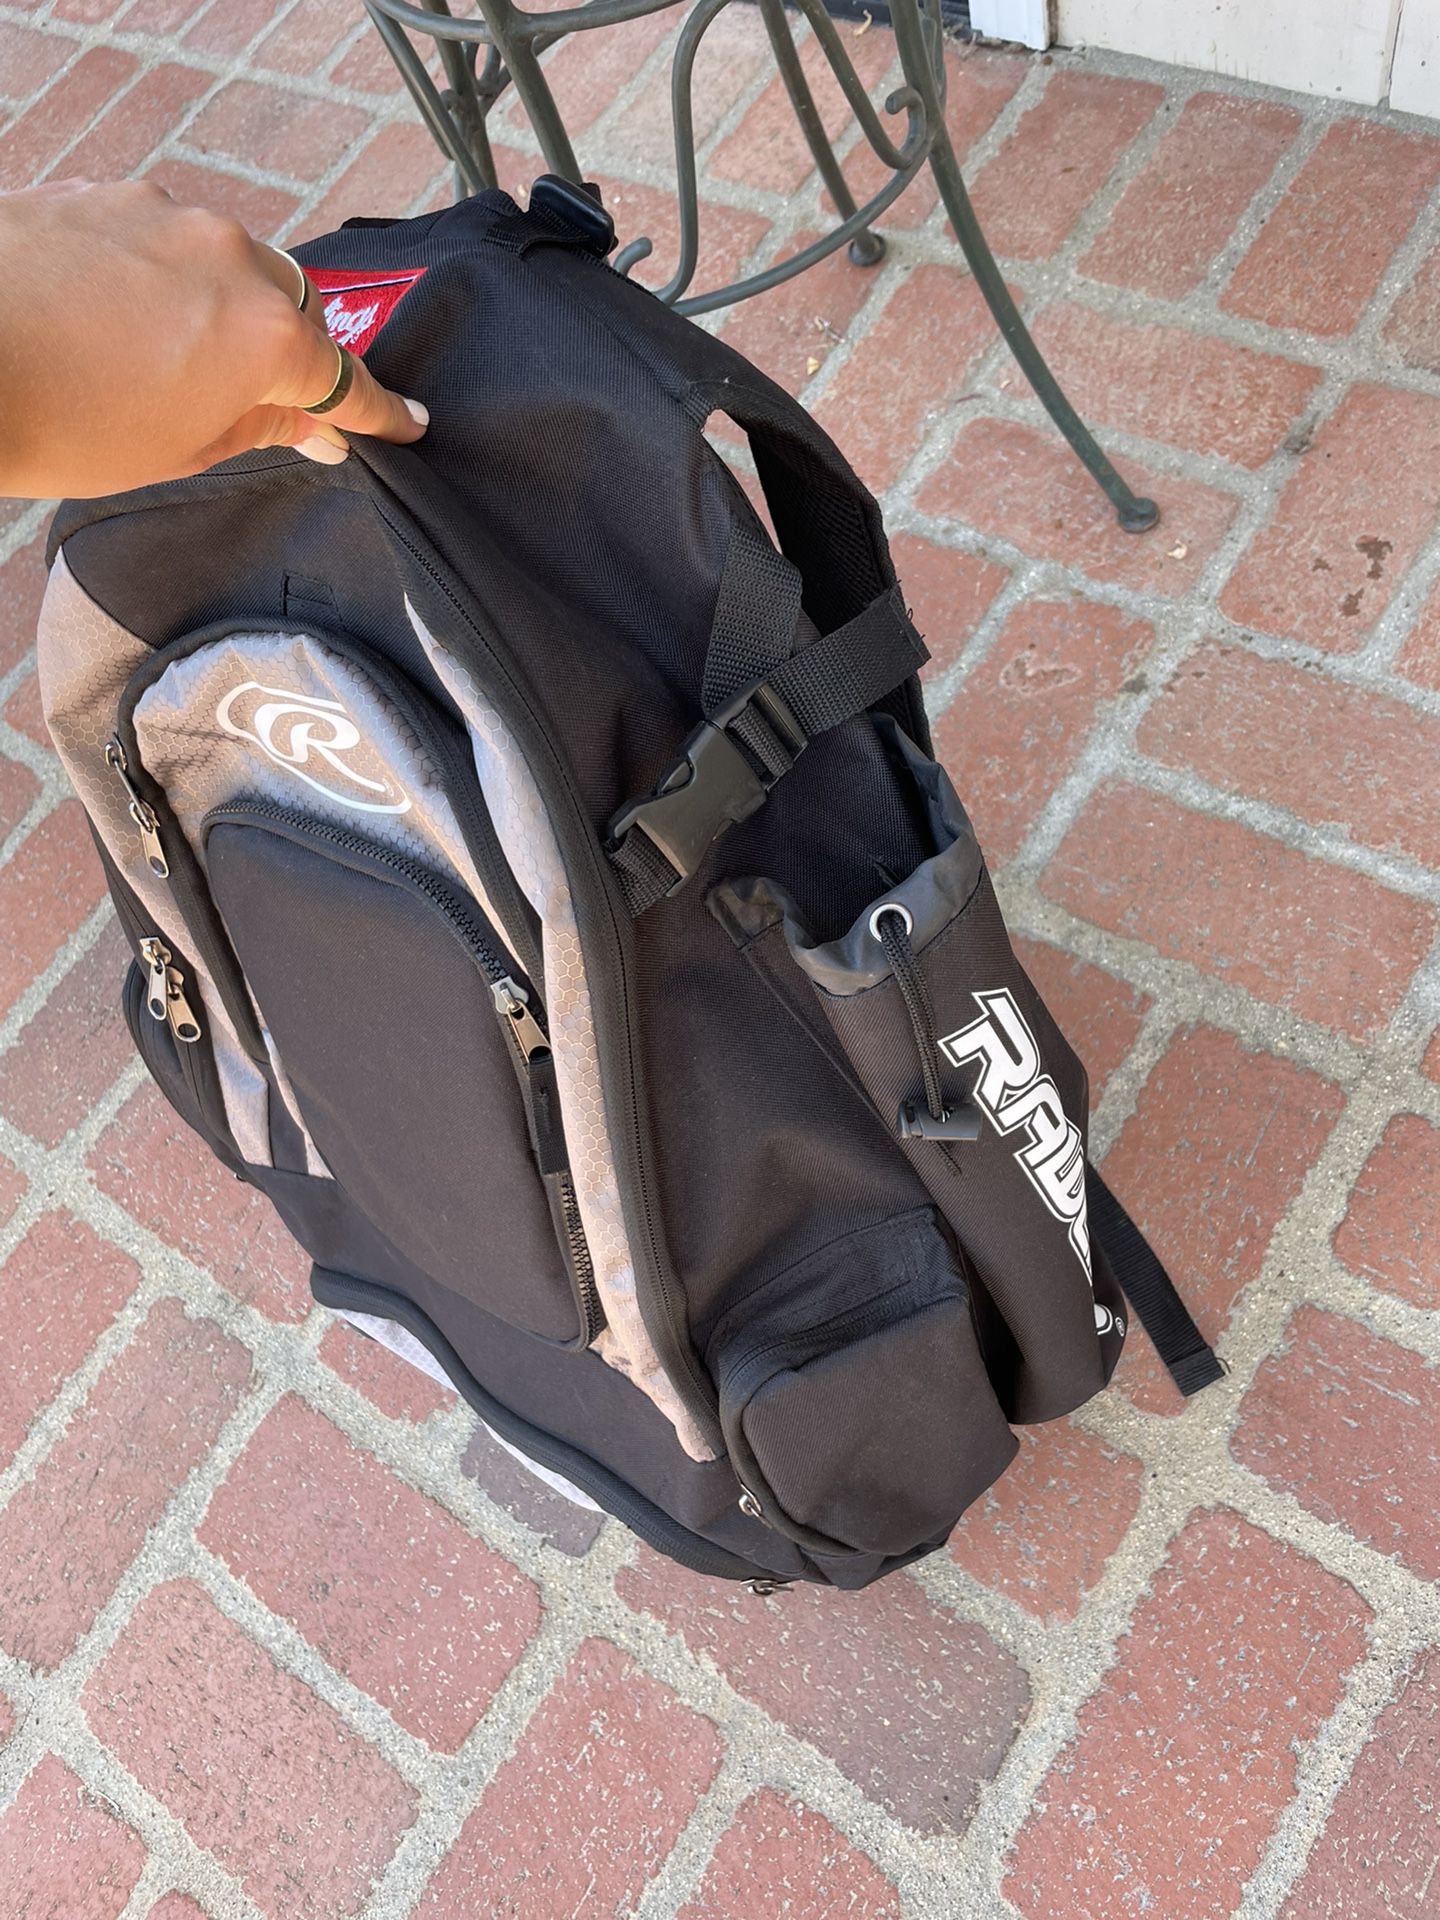 Rawlings softball backpack